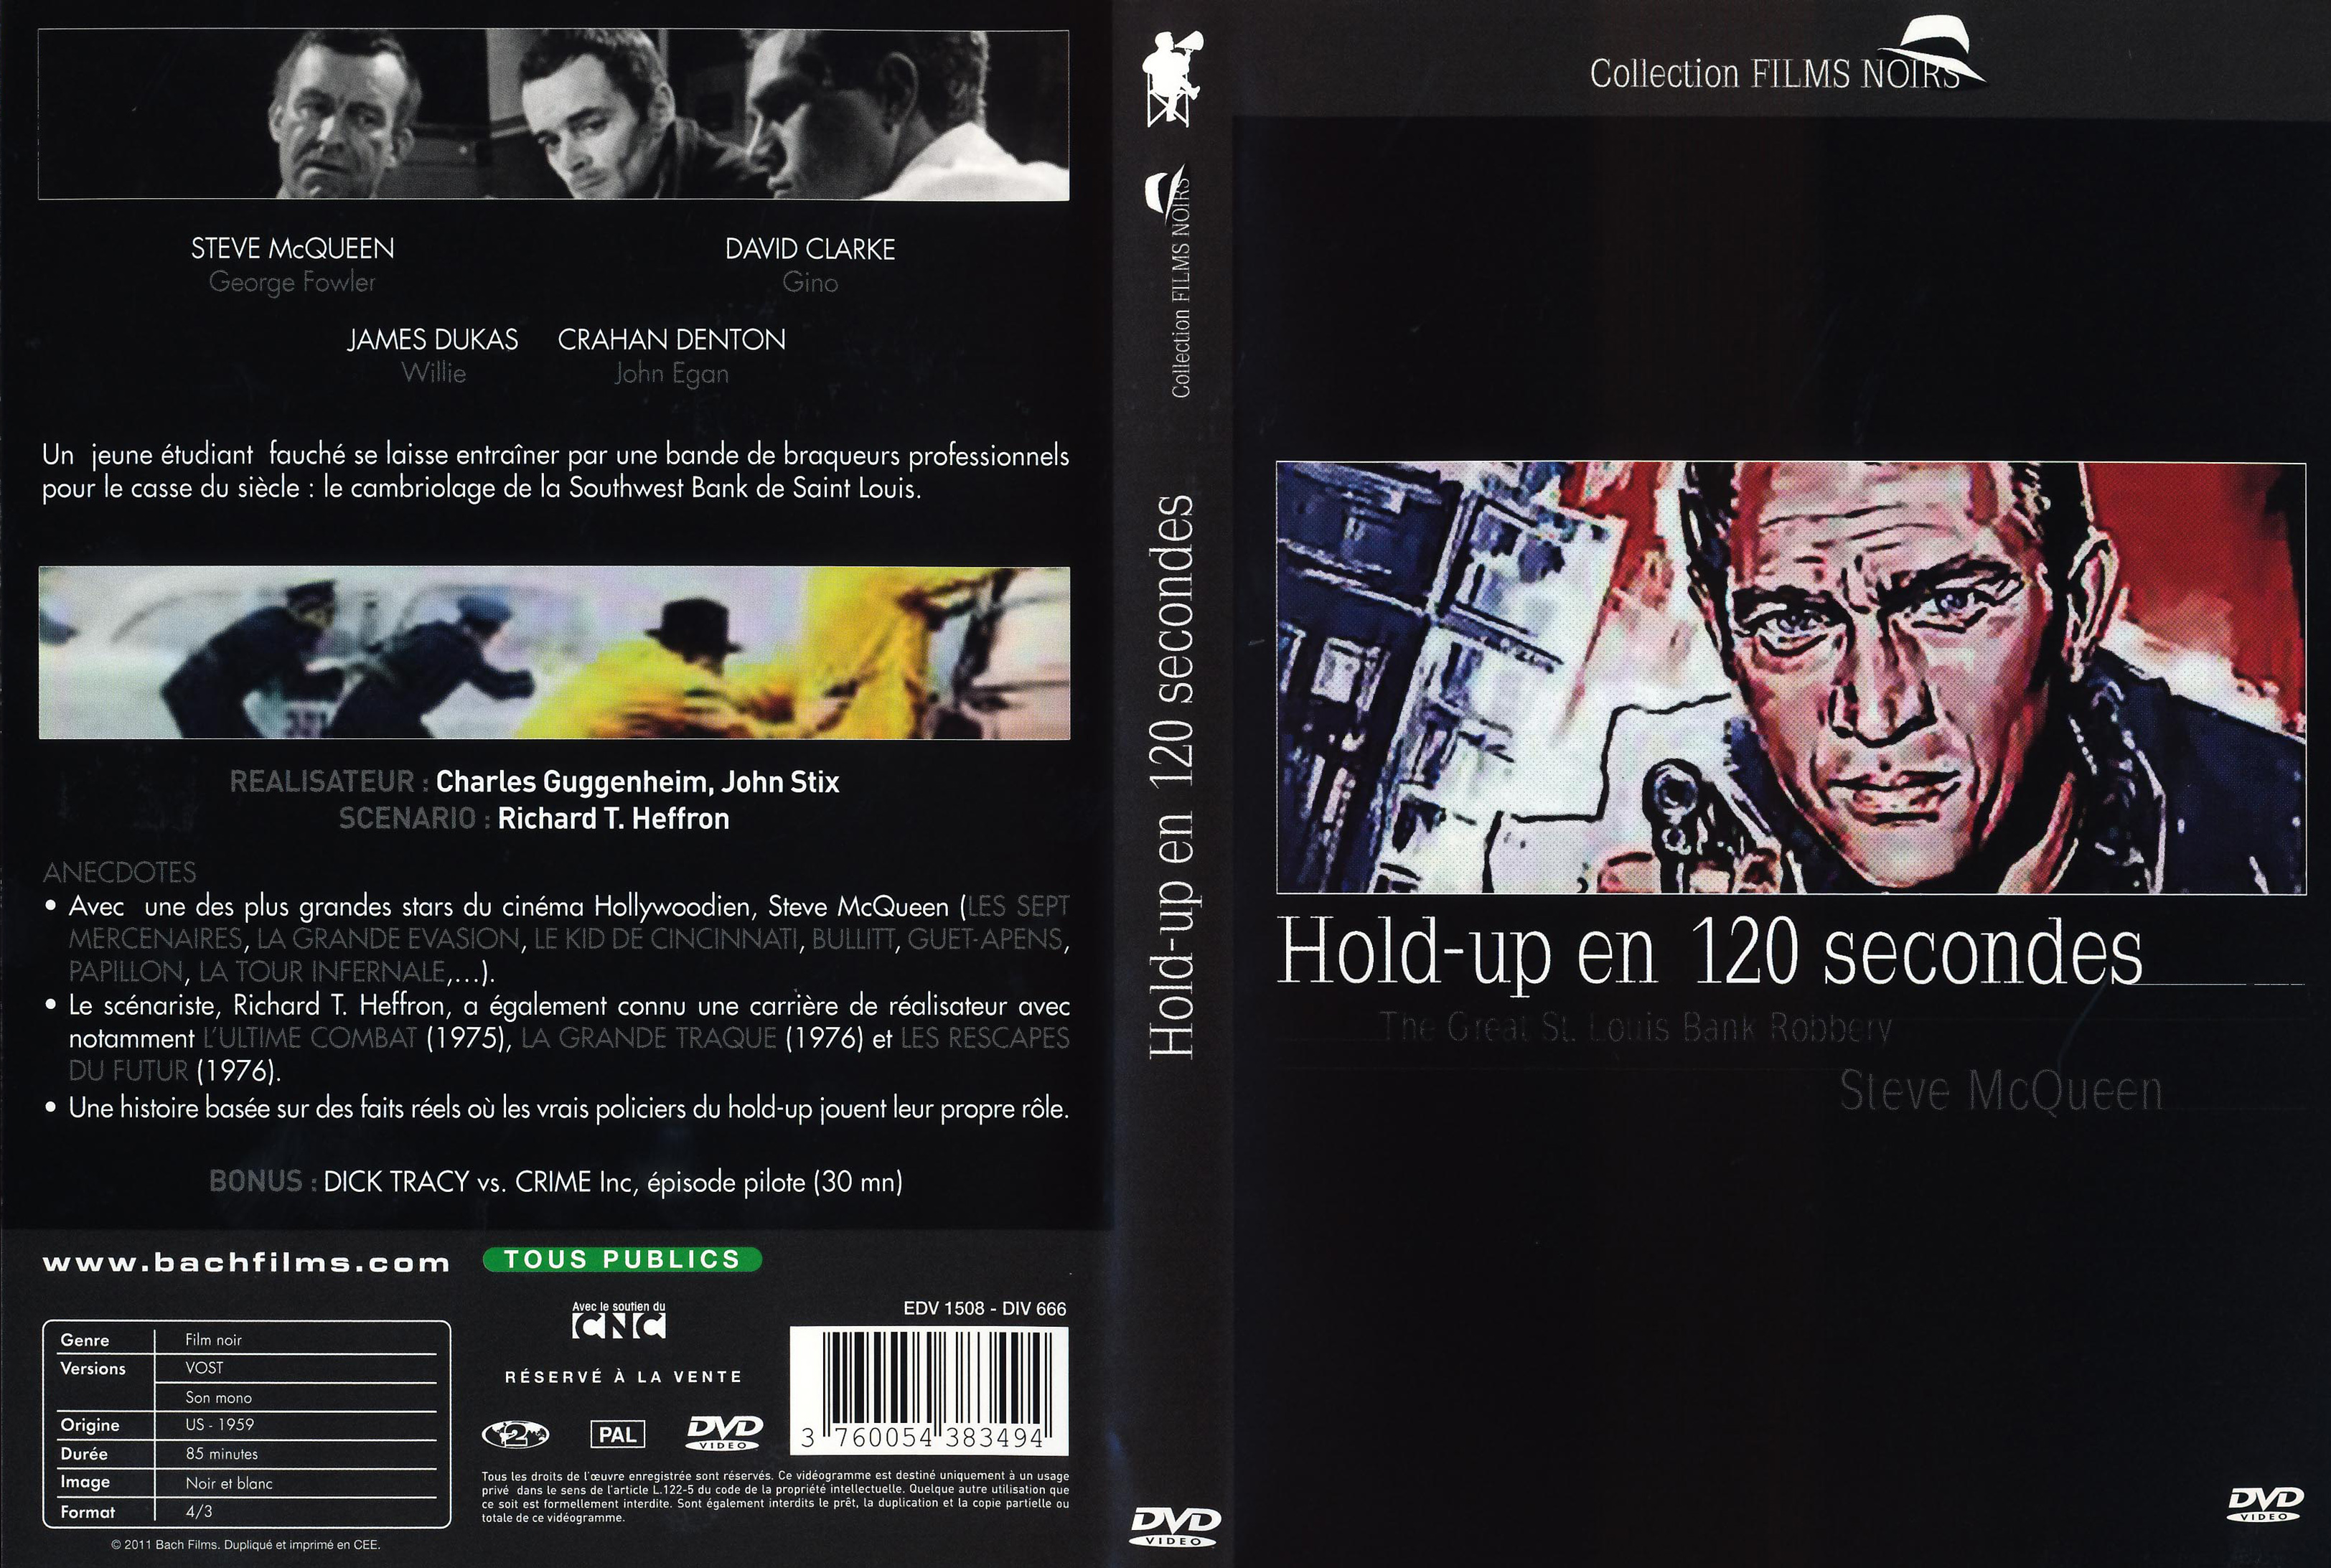 Jaquette DVD Hold-up en 120 secondes custom v2